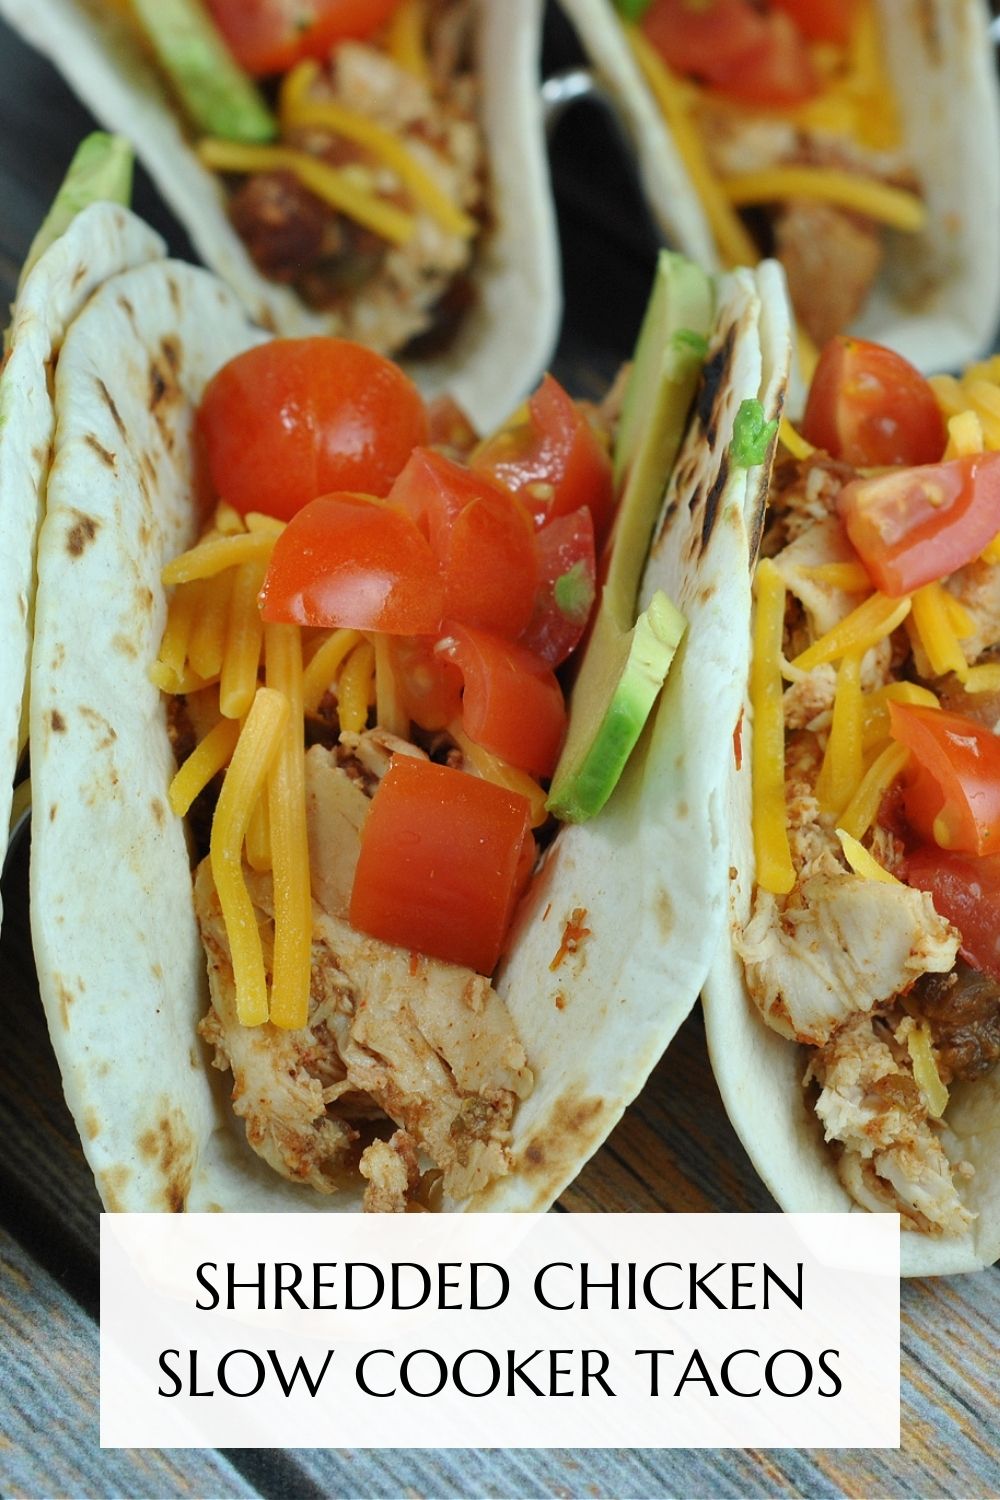 Shredded Chicken Slow Cooker Tacos via @preventionrd